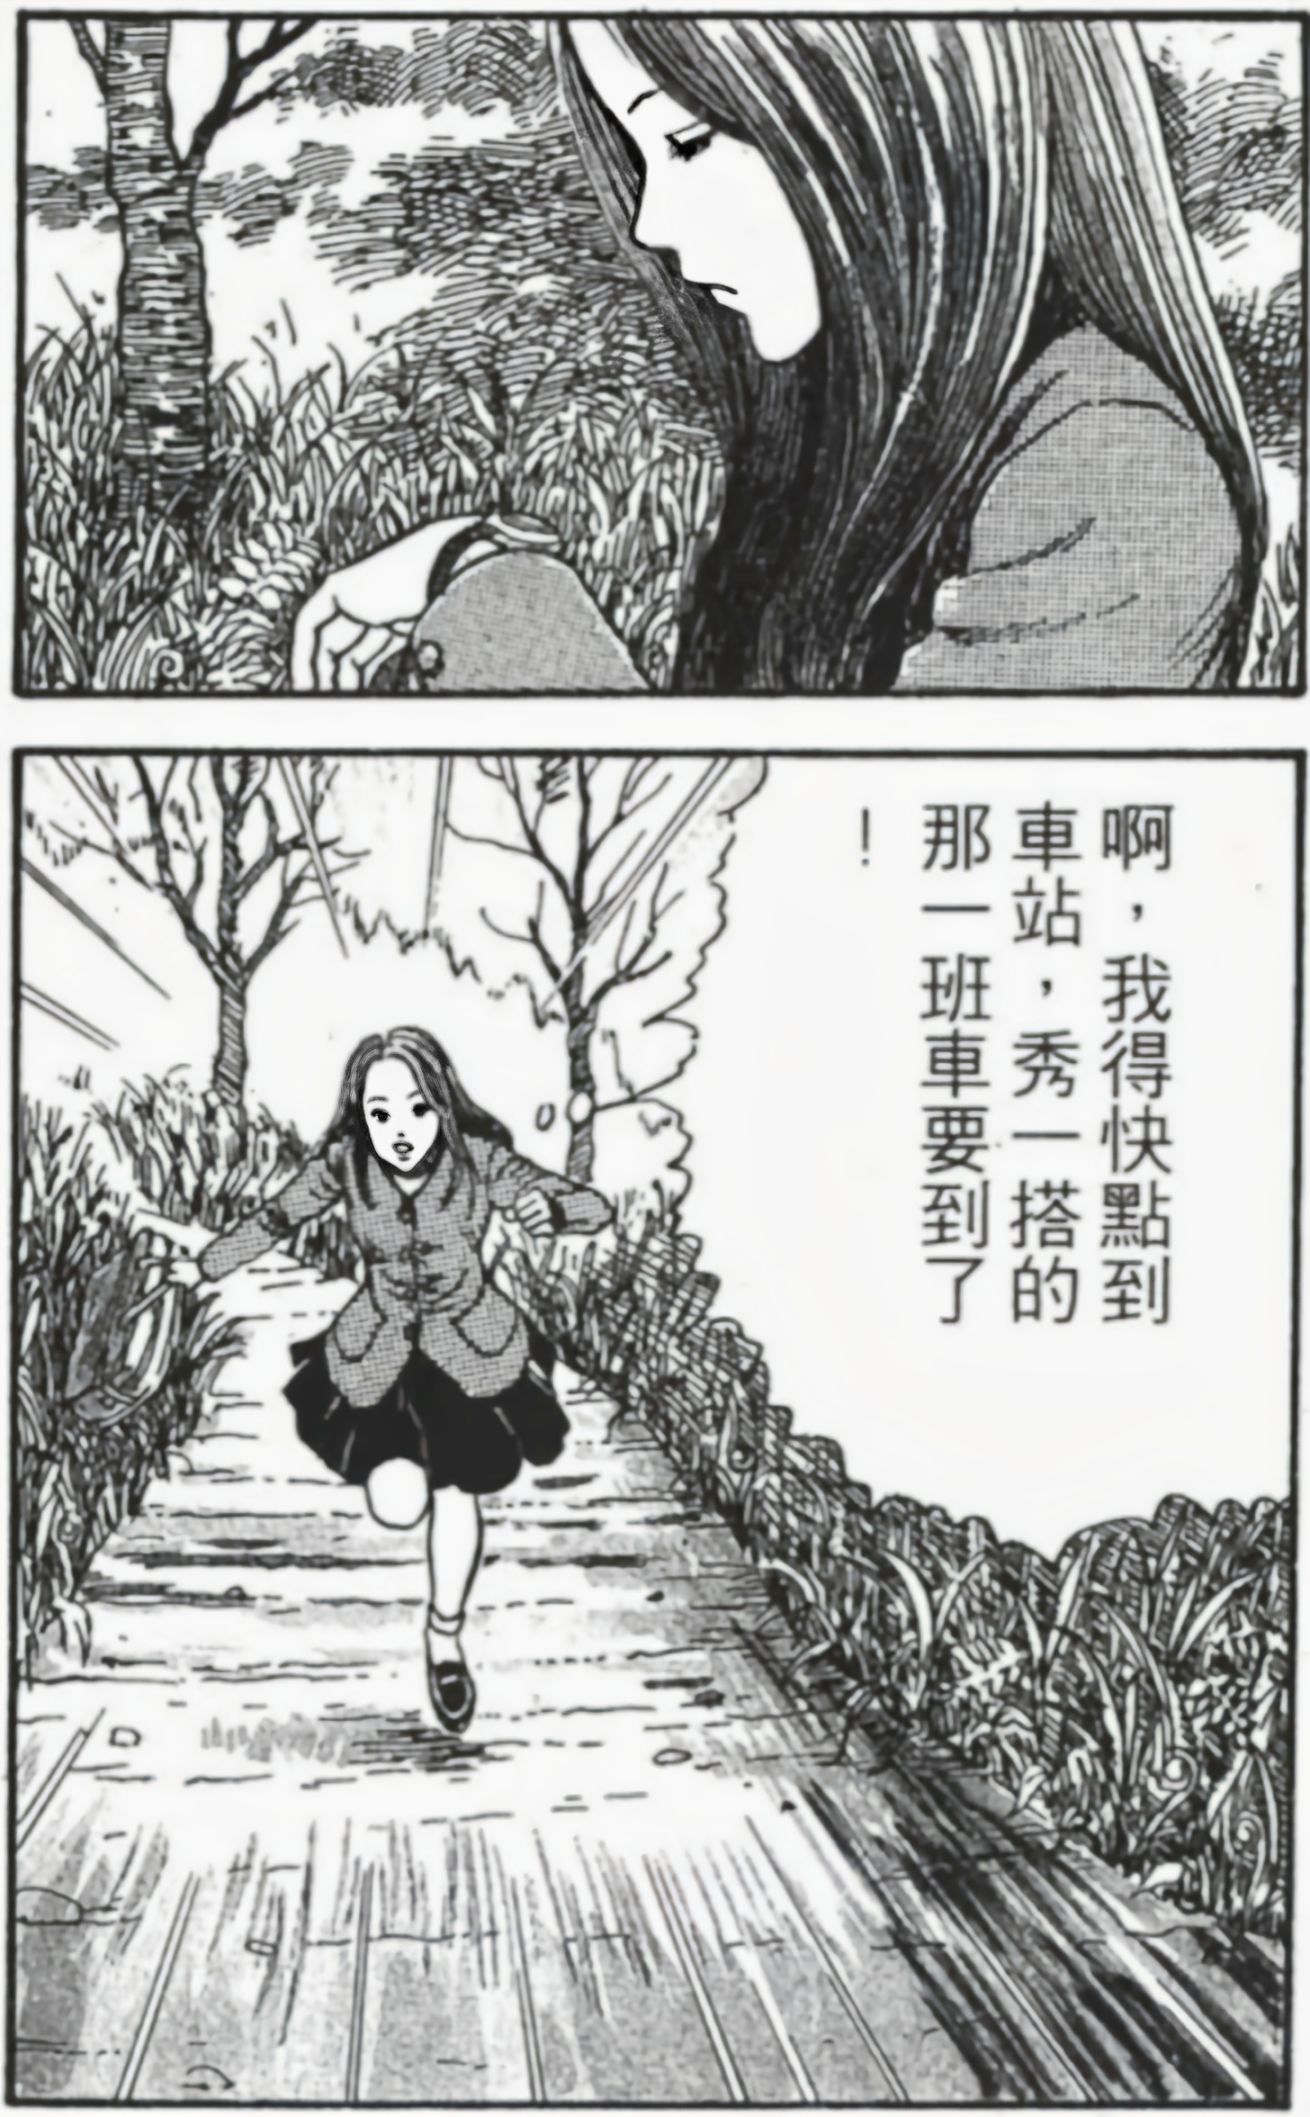 【影视动漫】伊藤润二的恐怖漫画《漩涡》-第6张